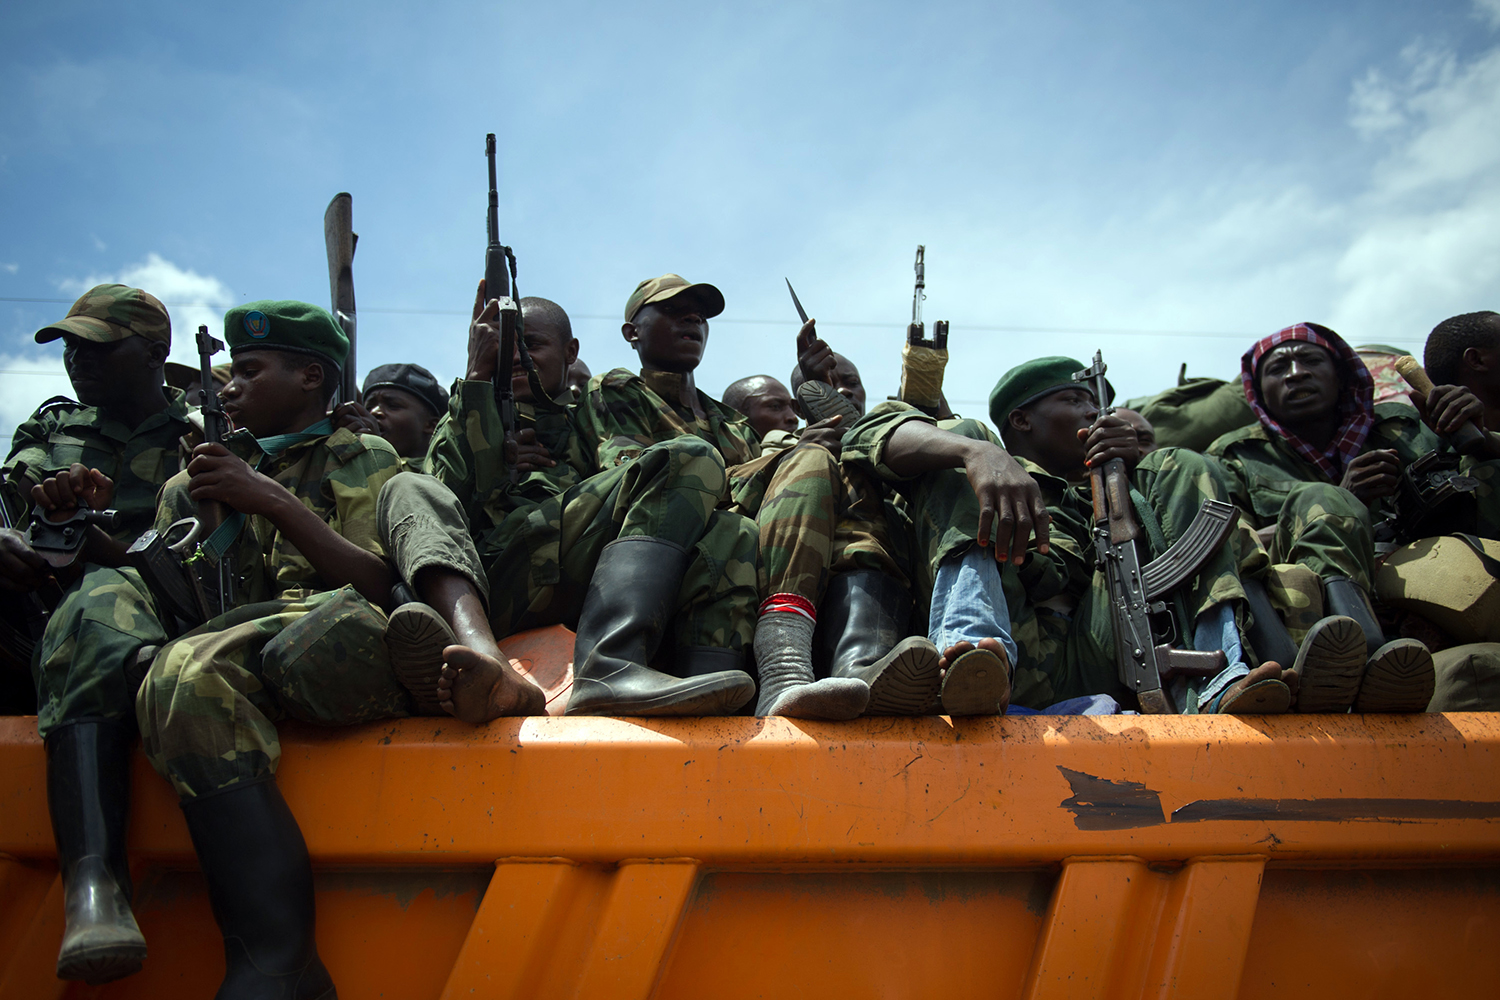 Los rebeldes del M23 se retiran de la ciudad de Goma, en el este de la República Democrática del Congo, el 1 de diciembre de 2012.